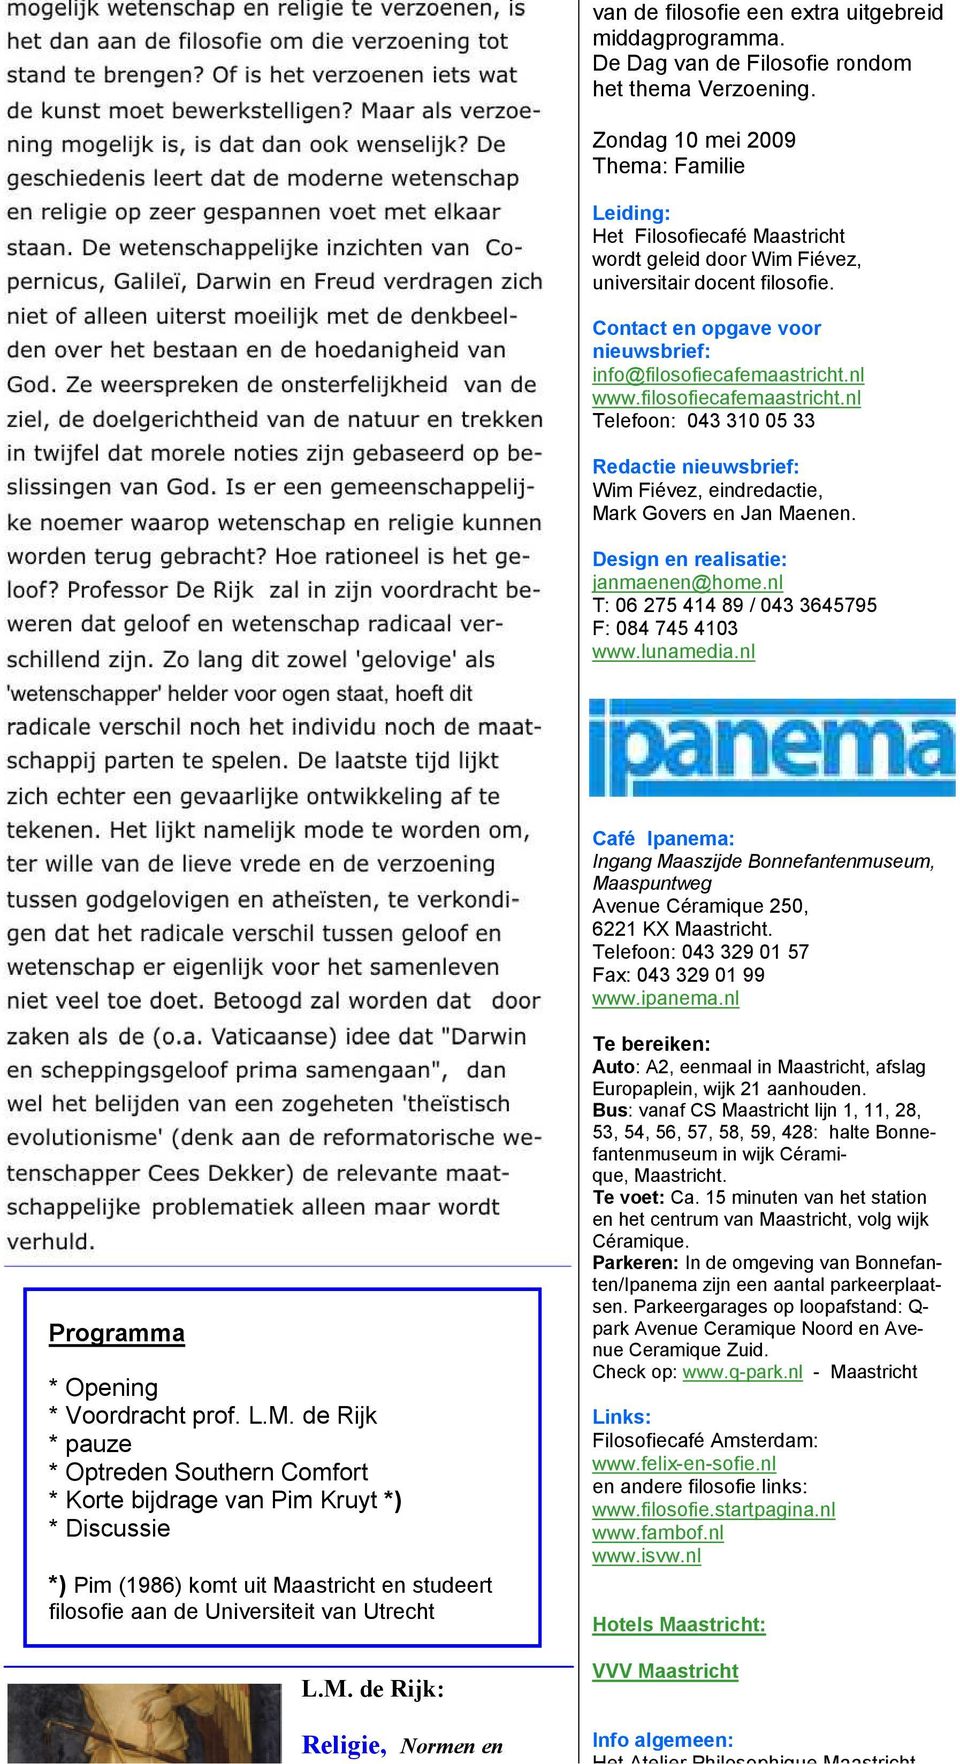 nl Telefoon: 043 310 05 33 Redactie nieuwsbrief: Wim Fiévez, eindredactie, Mark Govers en Jan Maenen. Design en realisatie: janmaenen@home.nl T: 06 275 414 89 / 043 3645795 F: 084 745 4103 www.